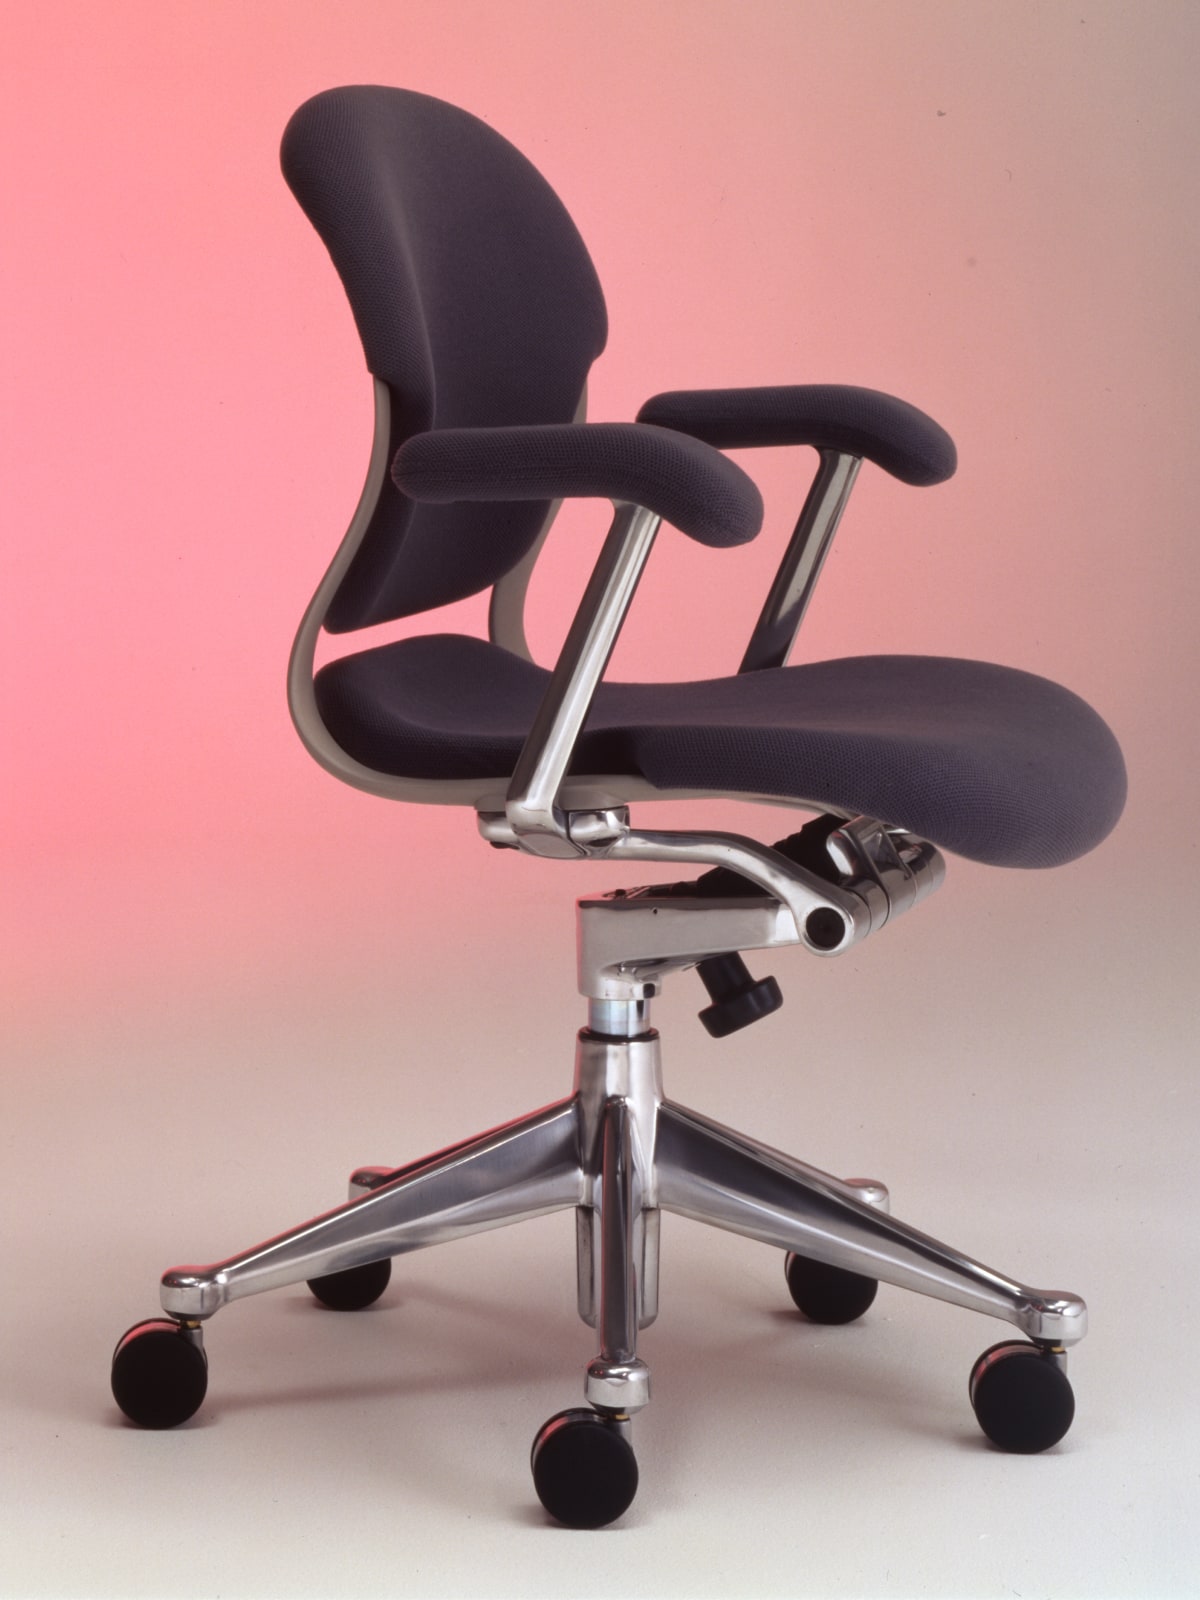 Ein Herman Miller Ergon-Stuhl mit polierten Beschlägen und dunkelgrauer Polsterung